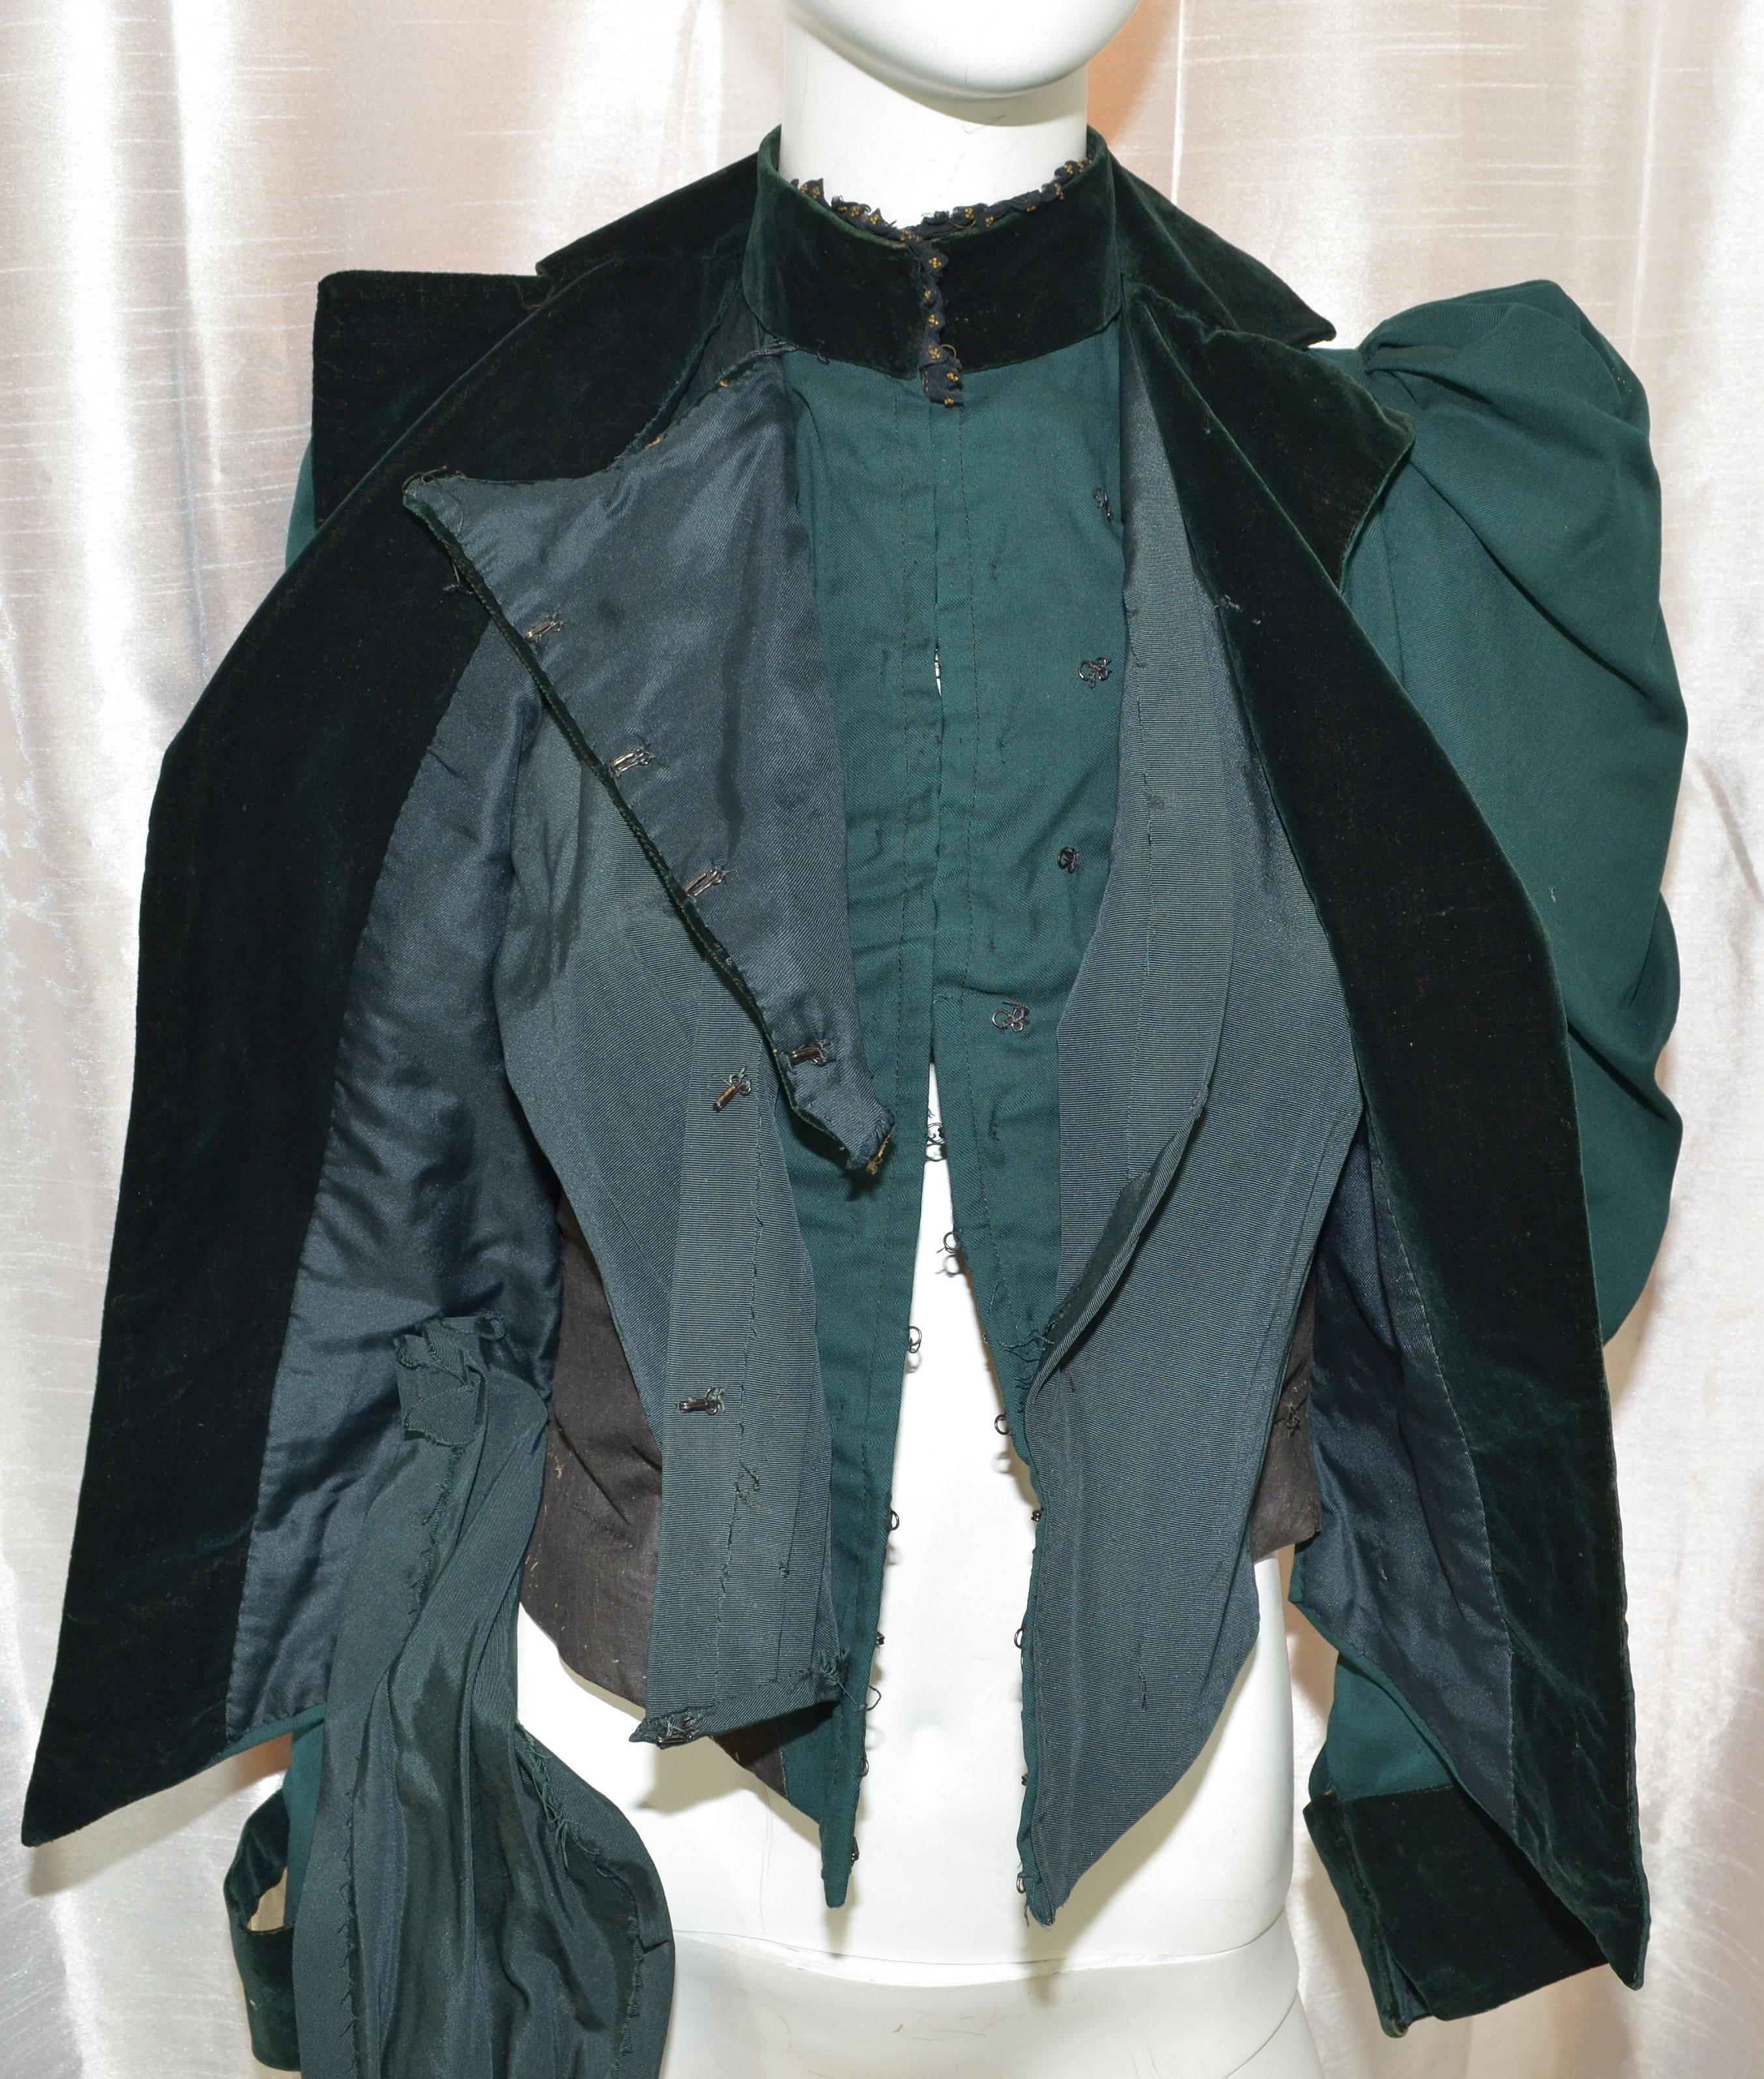 Women's Victorian Jacket with Built in Boned Corset